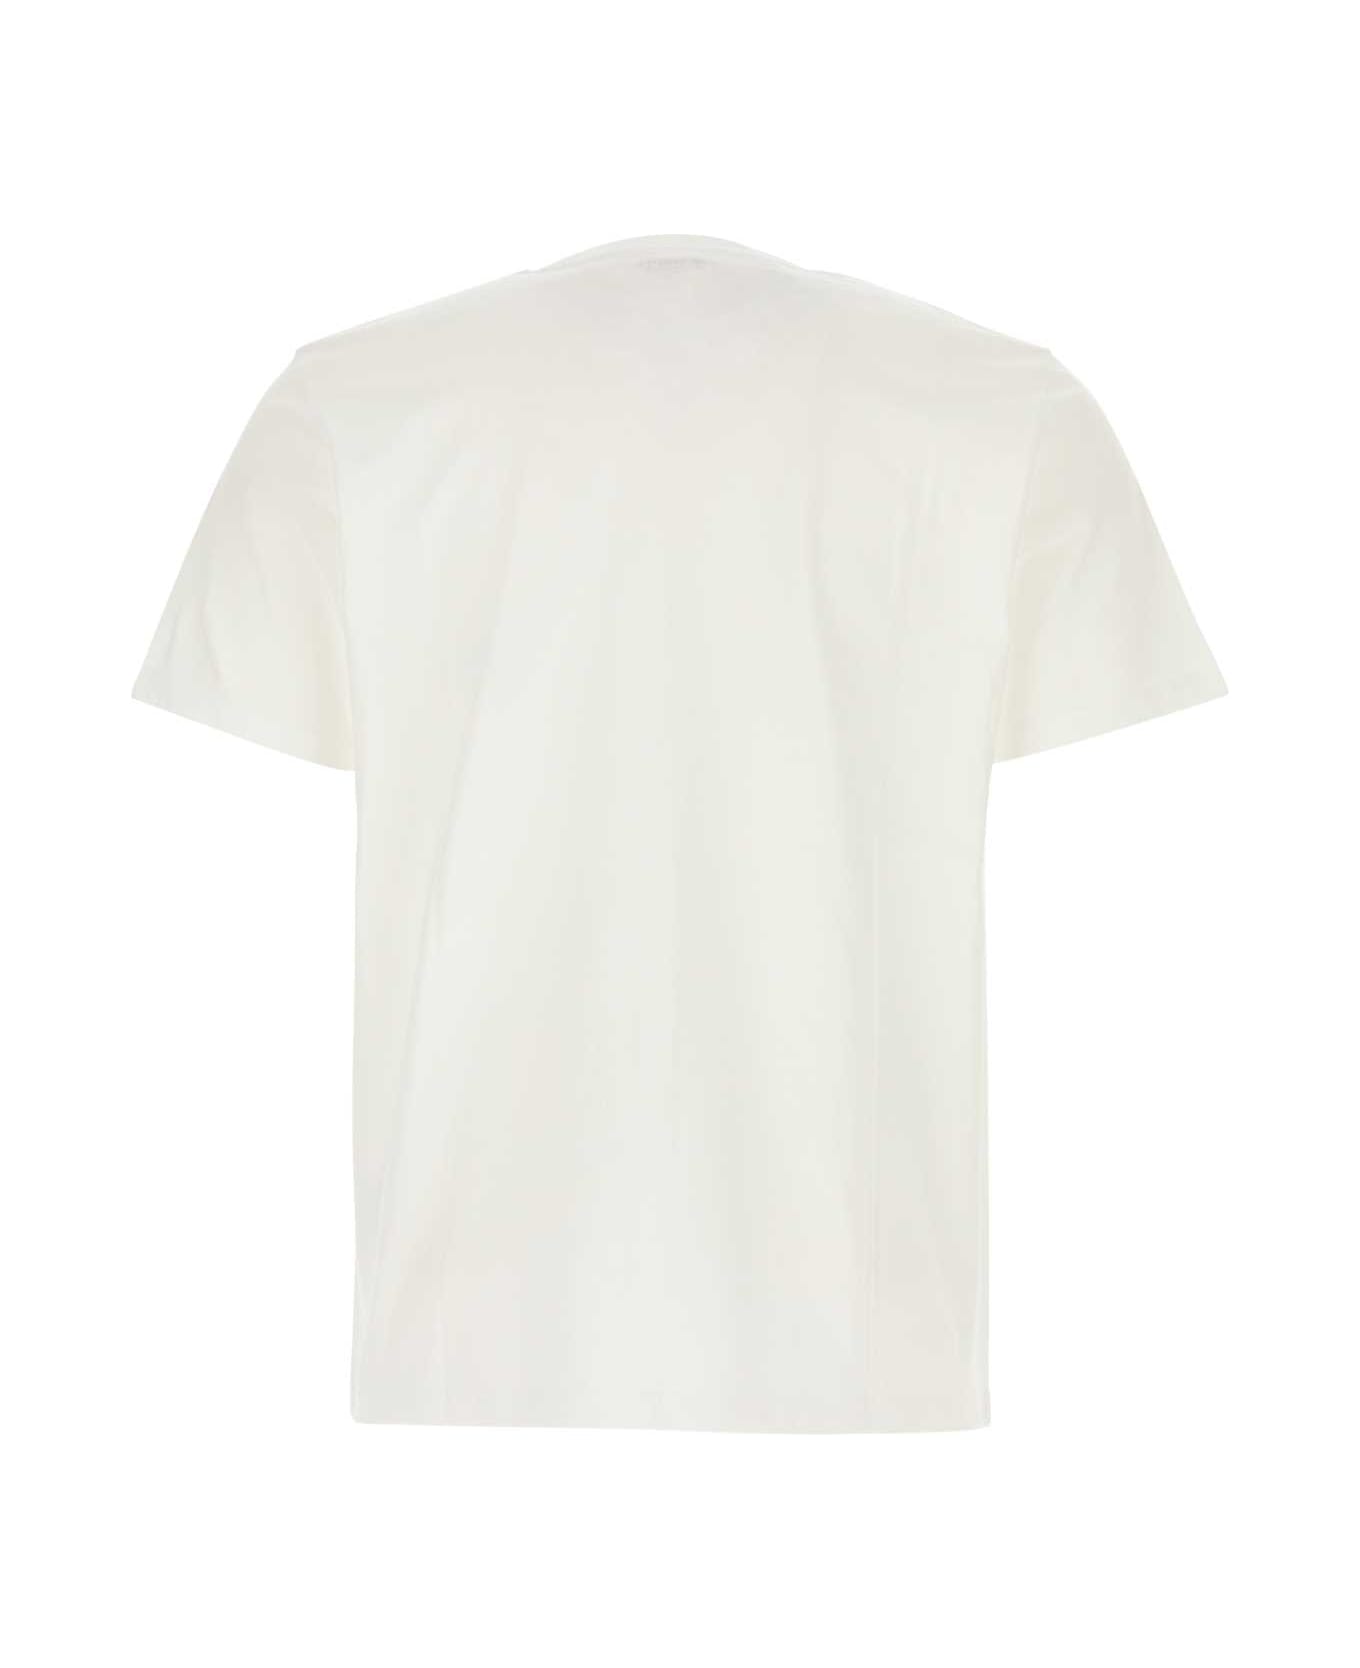 Carhartt White Cotton S/s Pocket T-shirt - WHITE